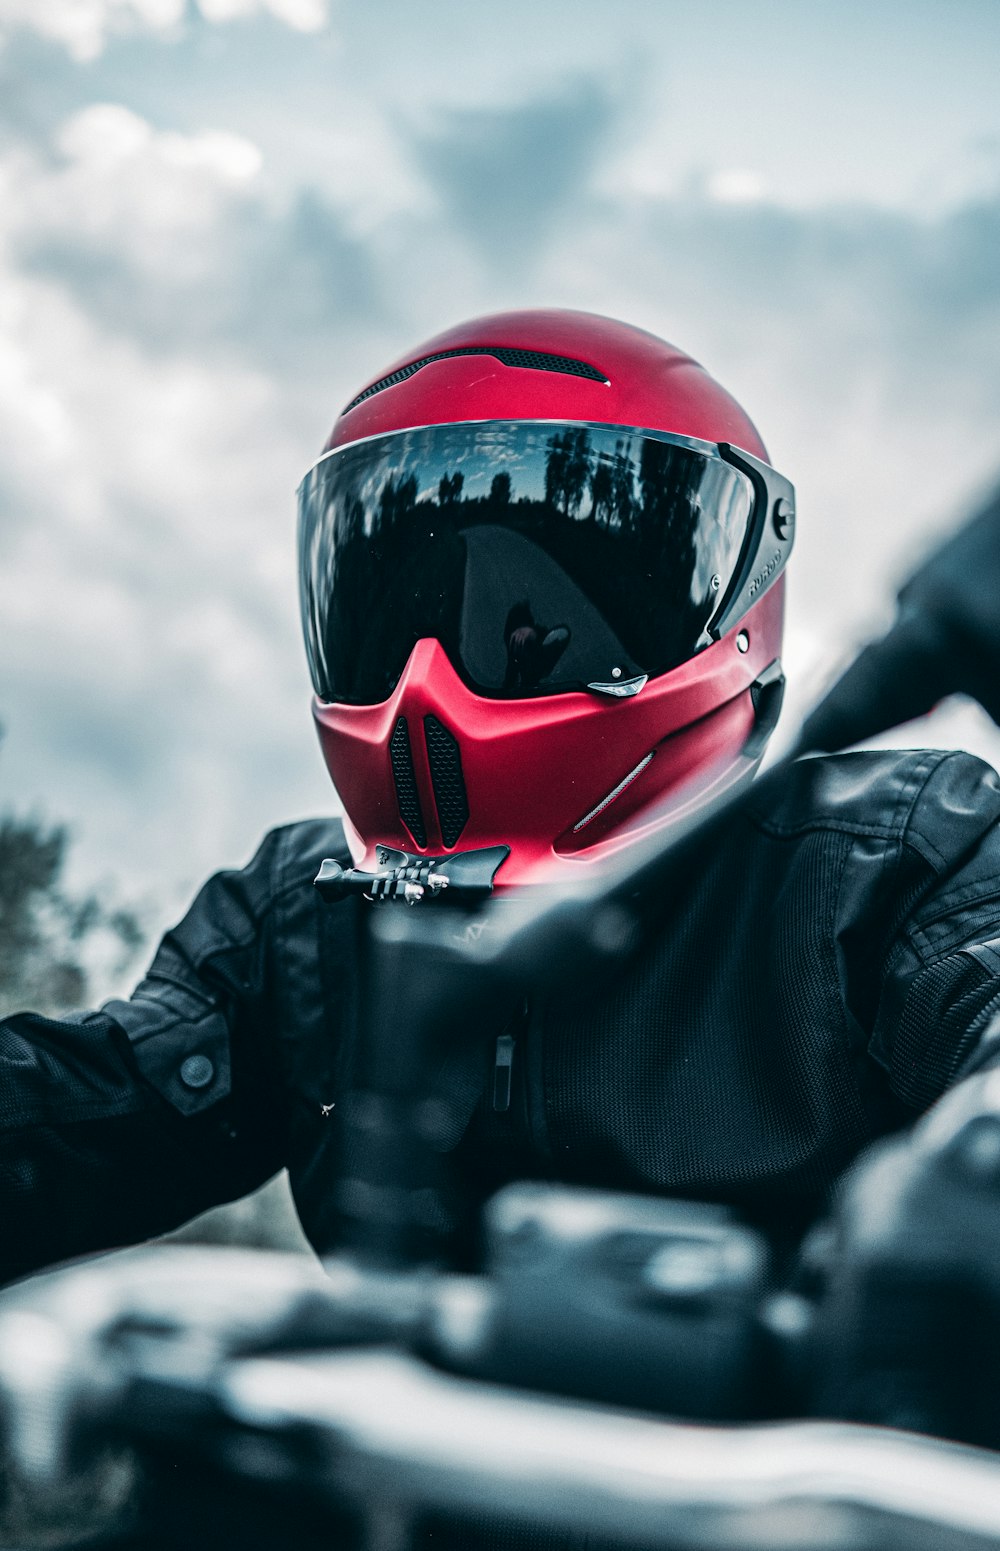 Una persona con un casco rojo y una chaqueta negra sentada en una motocicleta